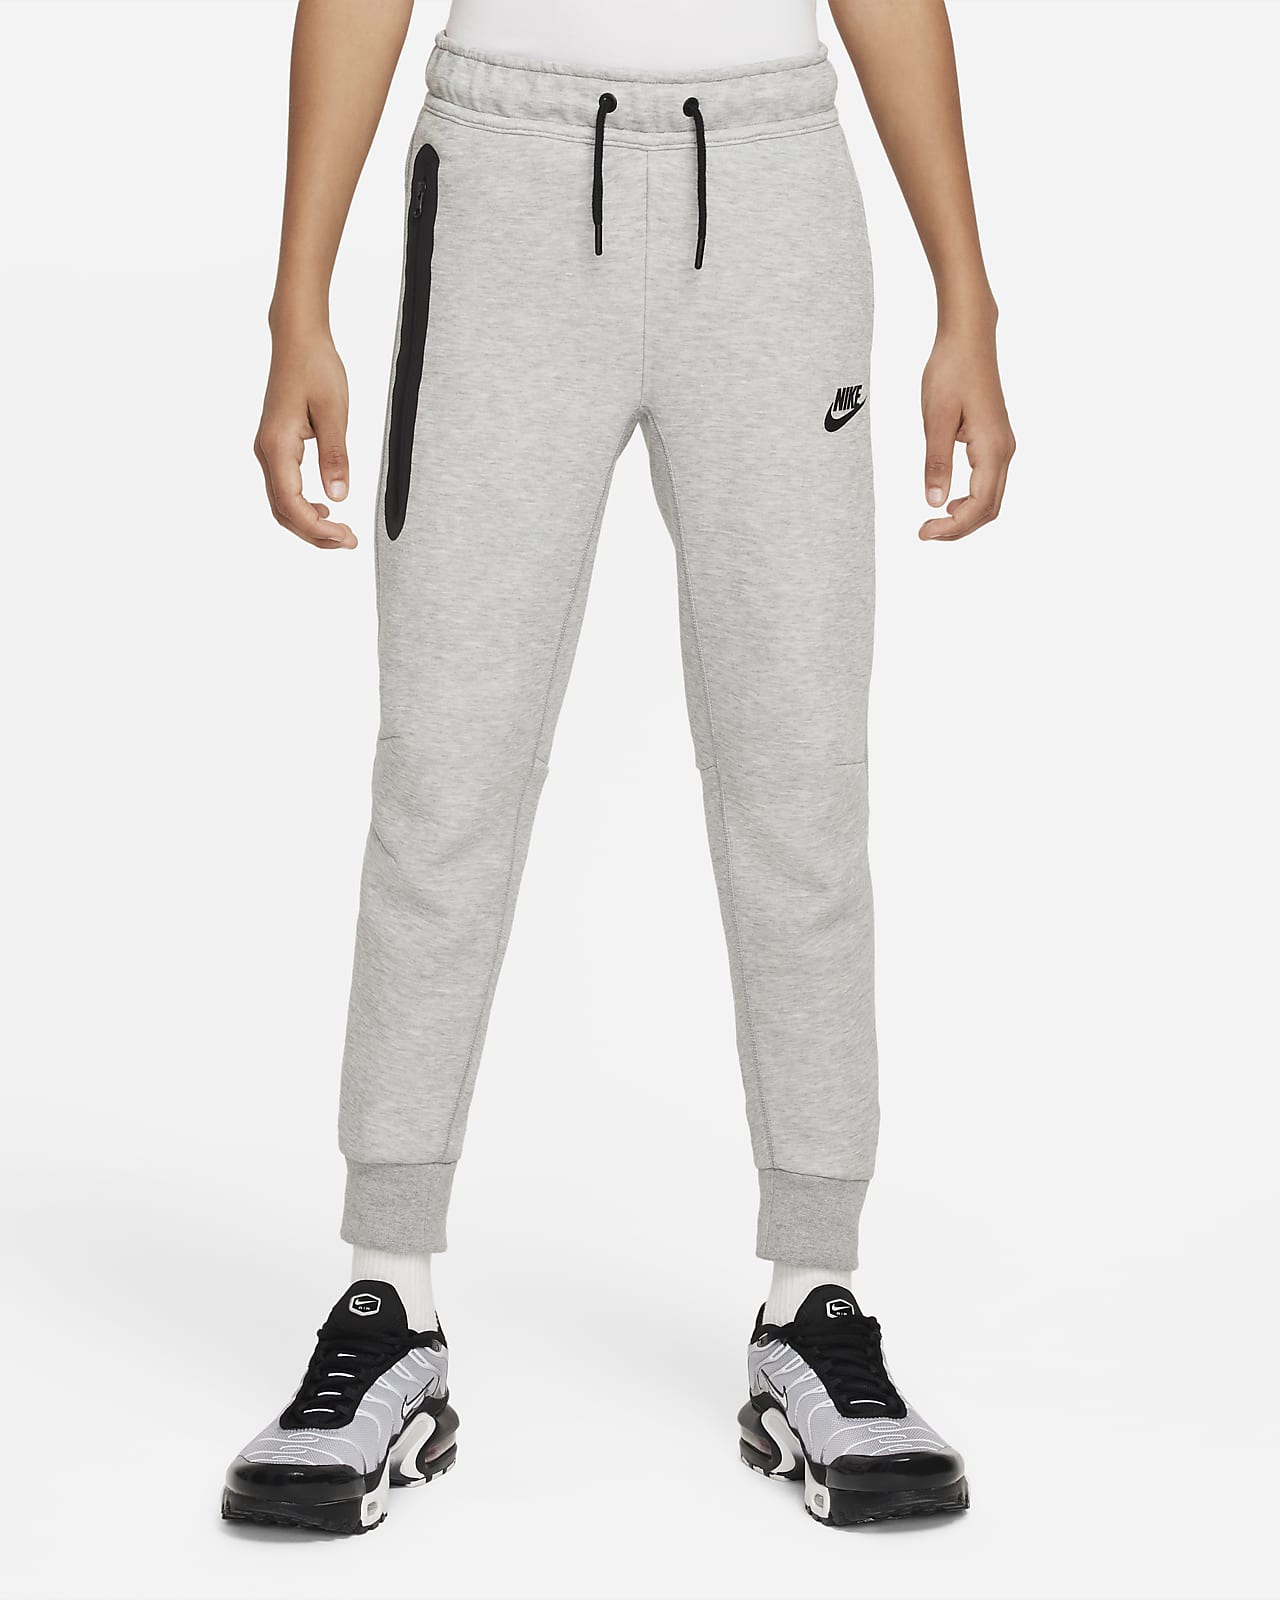 Nike WMNS Sportswear Essential Fleece Pants Black | BSTN Store